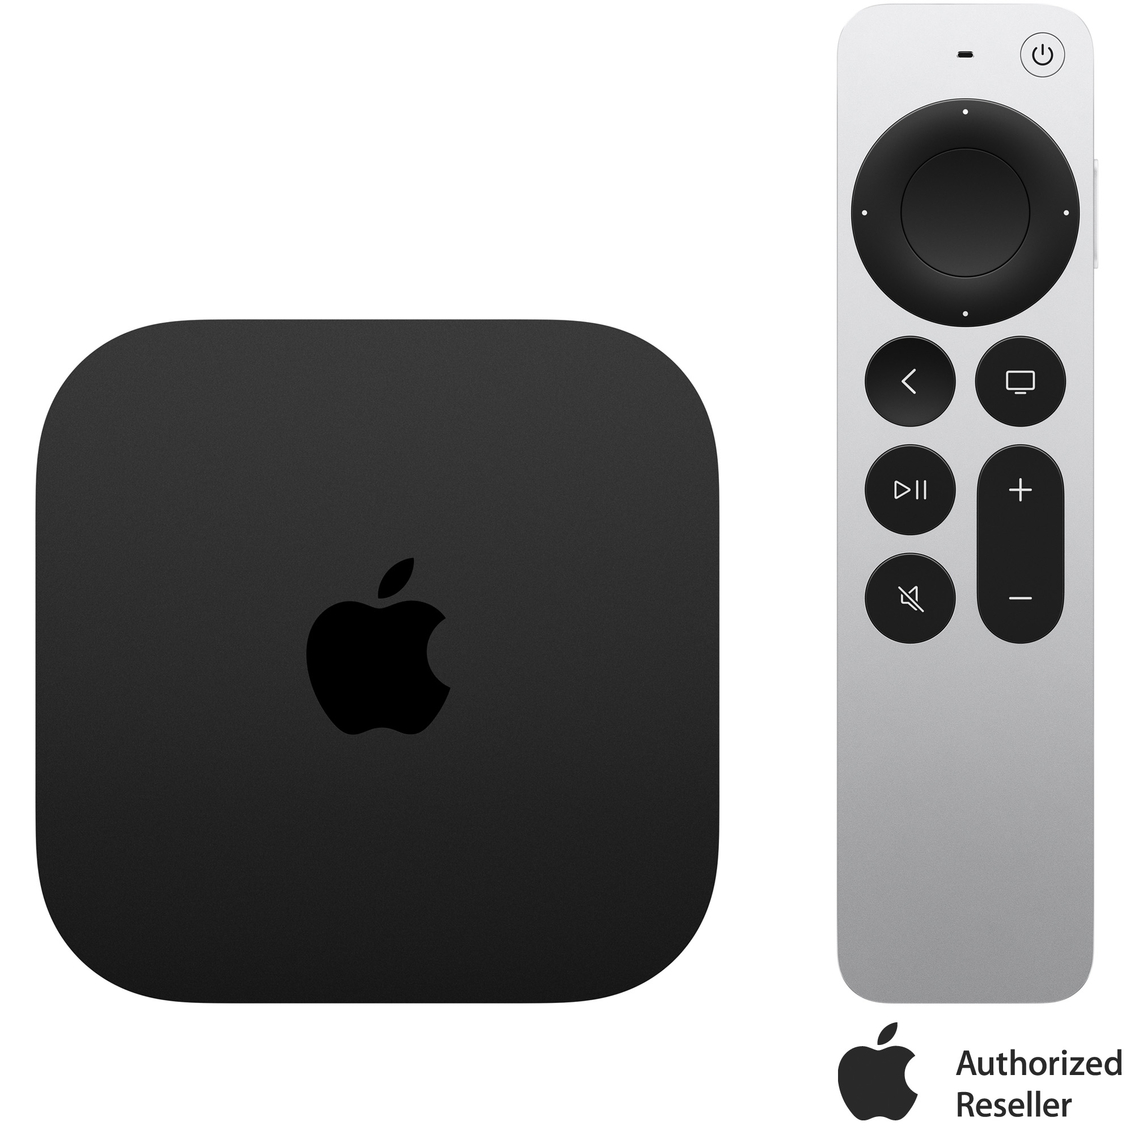 AAFES has Apple 4k TV on sale; $109 and $89